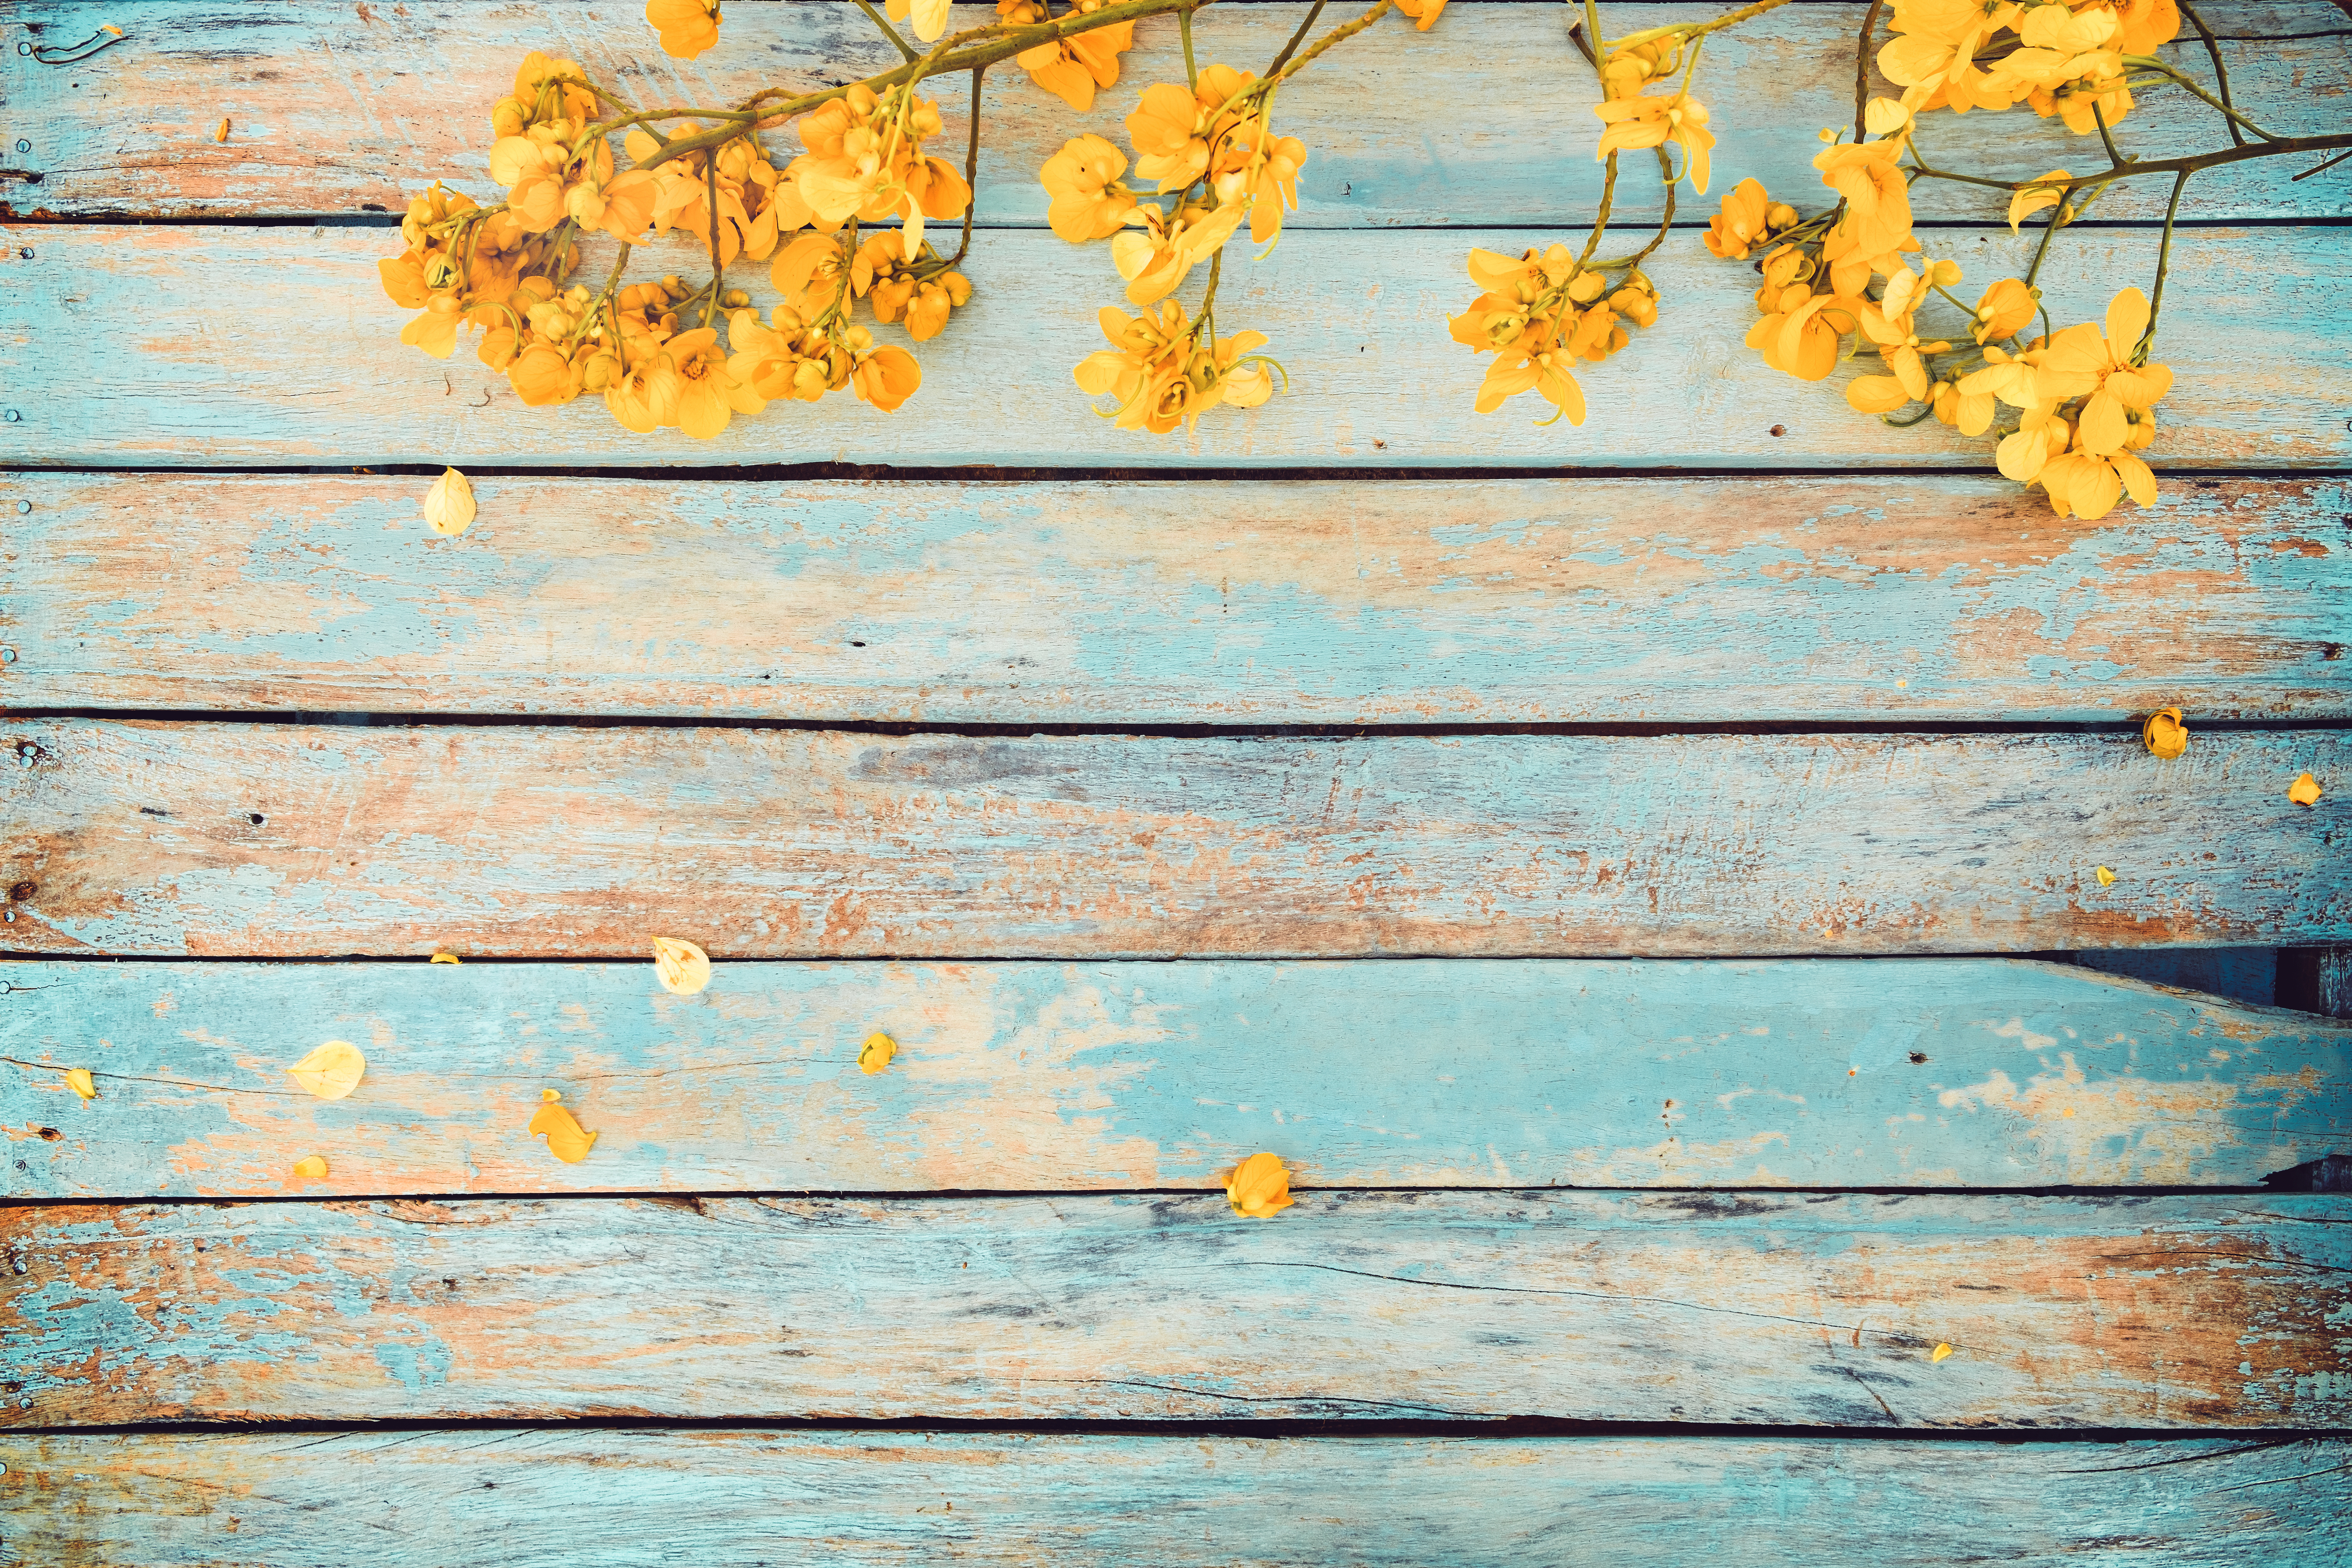 Hãy khám phá bức ảnh Hoa vàng vintage đẹp như mơ, với nền nên trông thật độc đáo và cổ điển. Màu vàng cũng tượng trưng cho sự sáng tạo, tươi trẻ, rực rỡ. Nét hoa tinh tế sẽ khiến bạn thích thú và cảm thấy thư giãn.